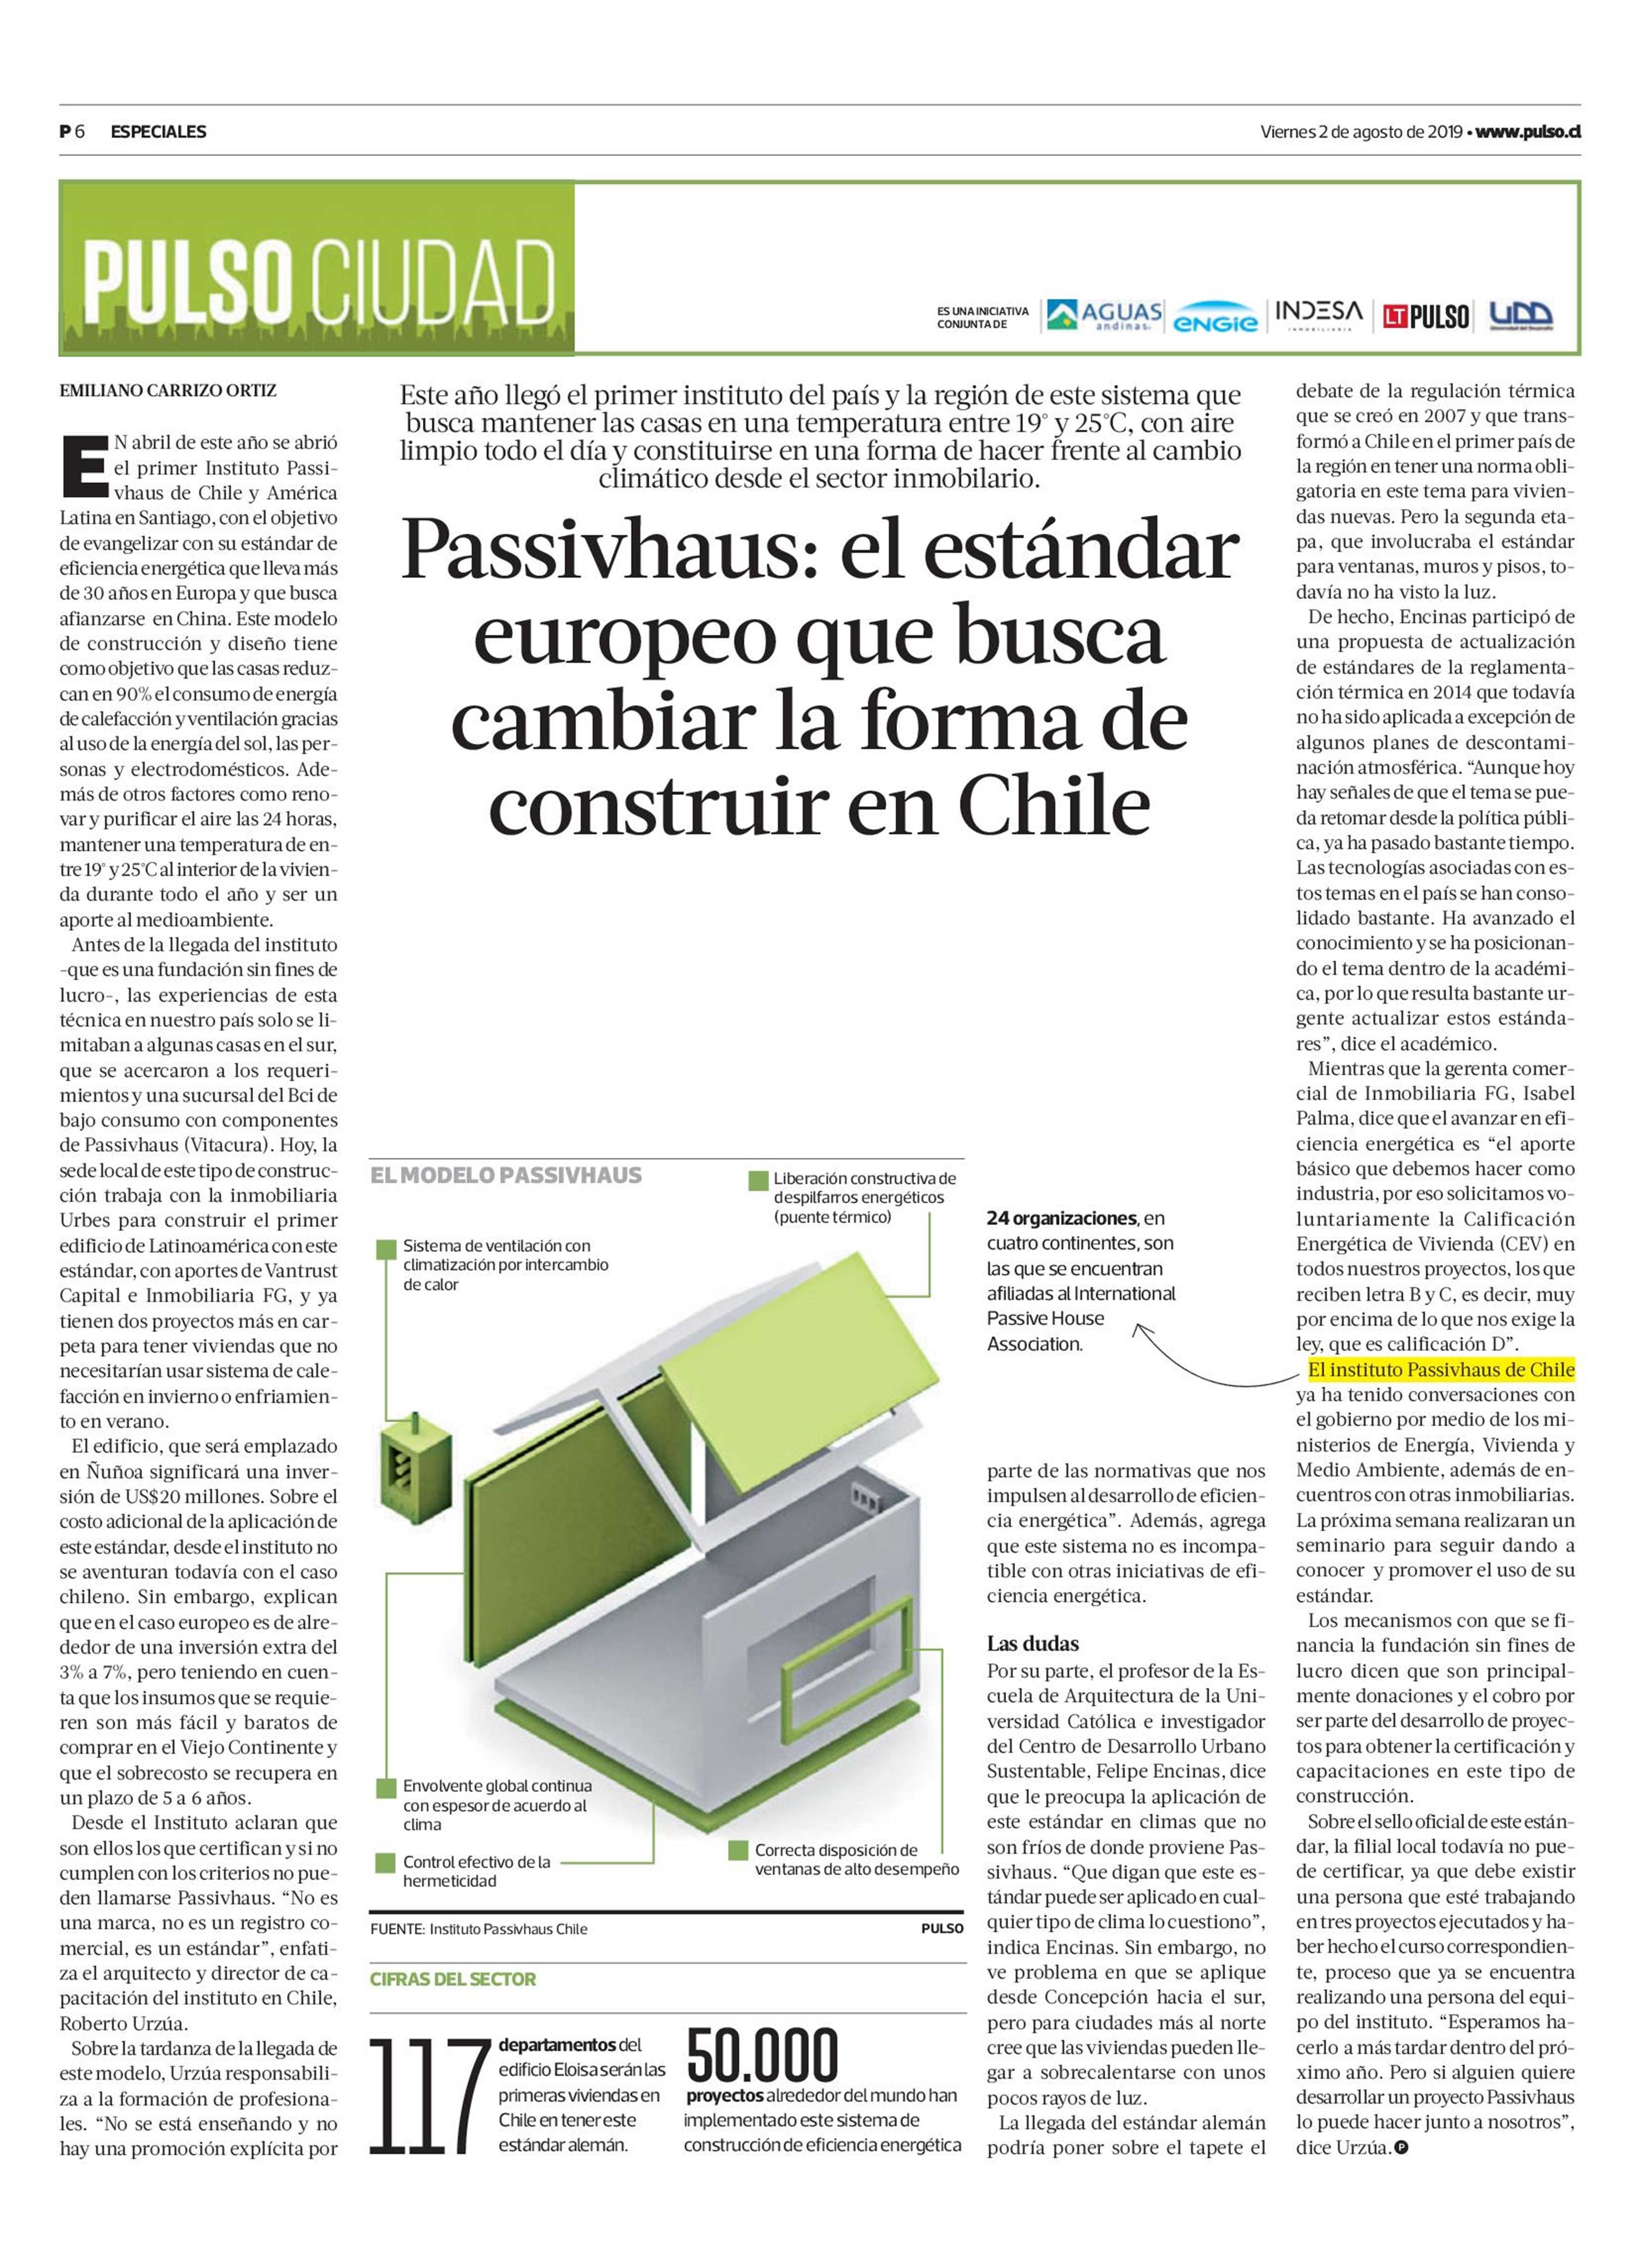 19-08-02_Director_de_Investigacion_y_Postgrado_FADEU_UC_habla_sobre_la_irrupcion_del_estandar_Passivhaus_en_Chile.jpeg